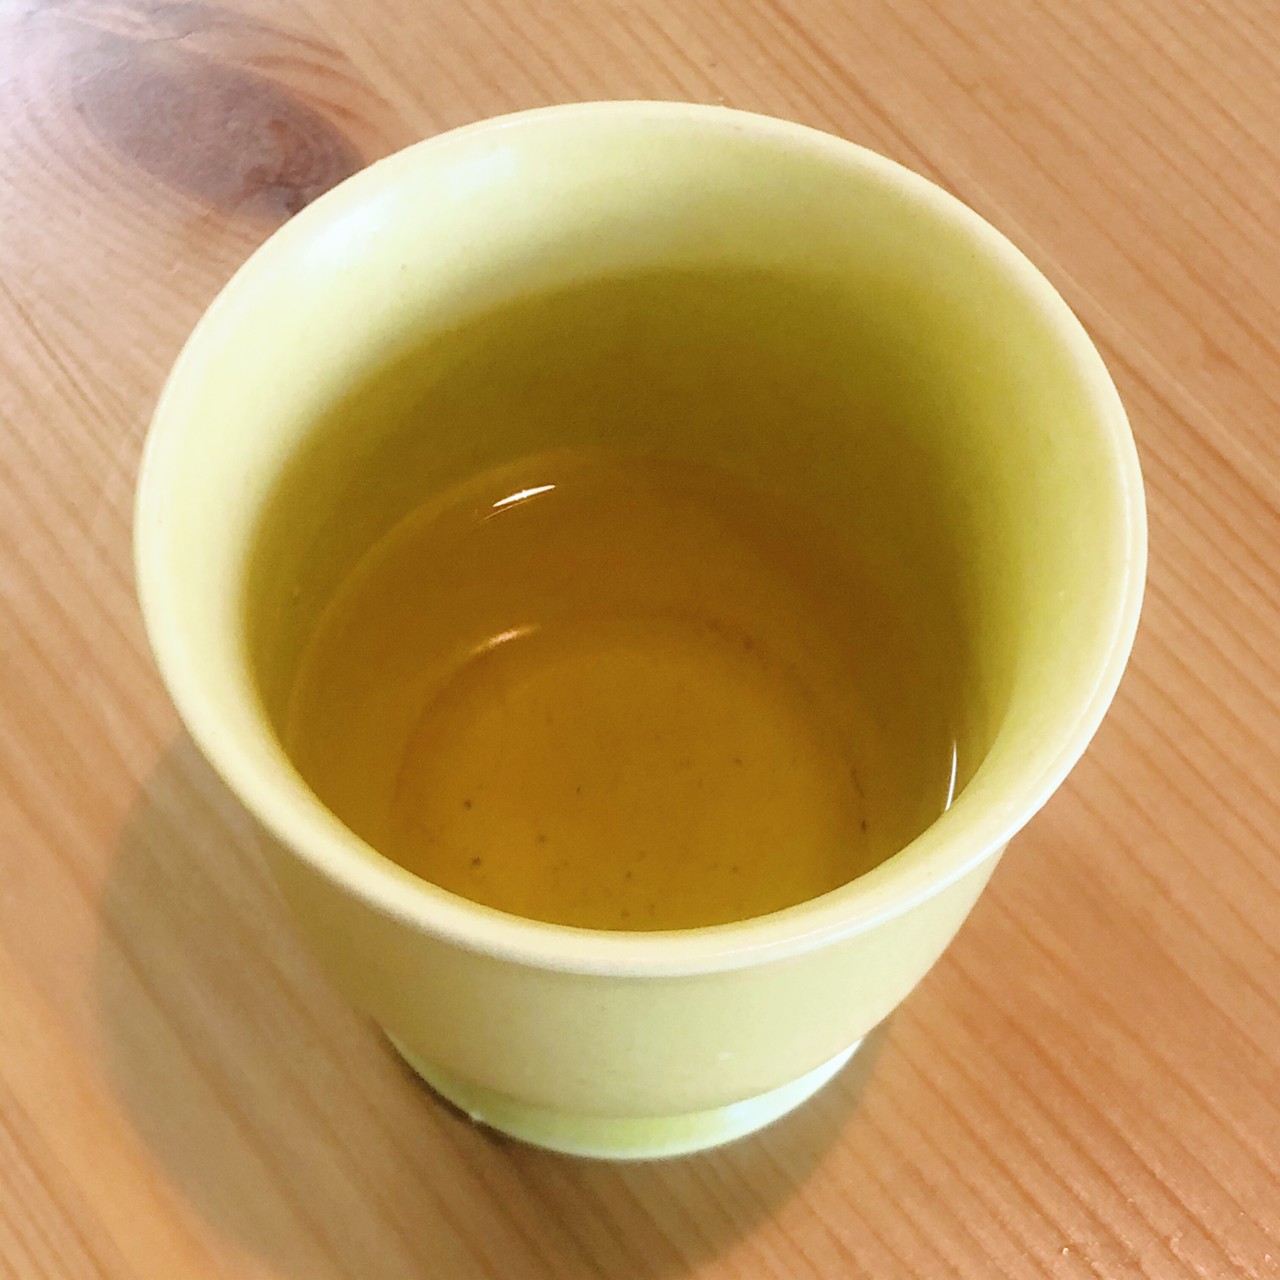 まずは一煎目。抽出レシピを忠実に再現して行きましょう。温度は90度、湯量は70mL、蒸らし時間15秒。
高温で思いっきり香りを出し切る飲み方。一煎目は香りをしっかり堪能しつつ、高温で淹れてもあまり苦味が出ないのでくいっと一杯でいただけちゃいます。色は黄金色で、見た目も中国茶には近いですが、中国茶独特の渋みがなく、釜炒りの炒った香りがダイレクトにシュートしてくれます。